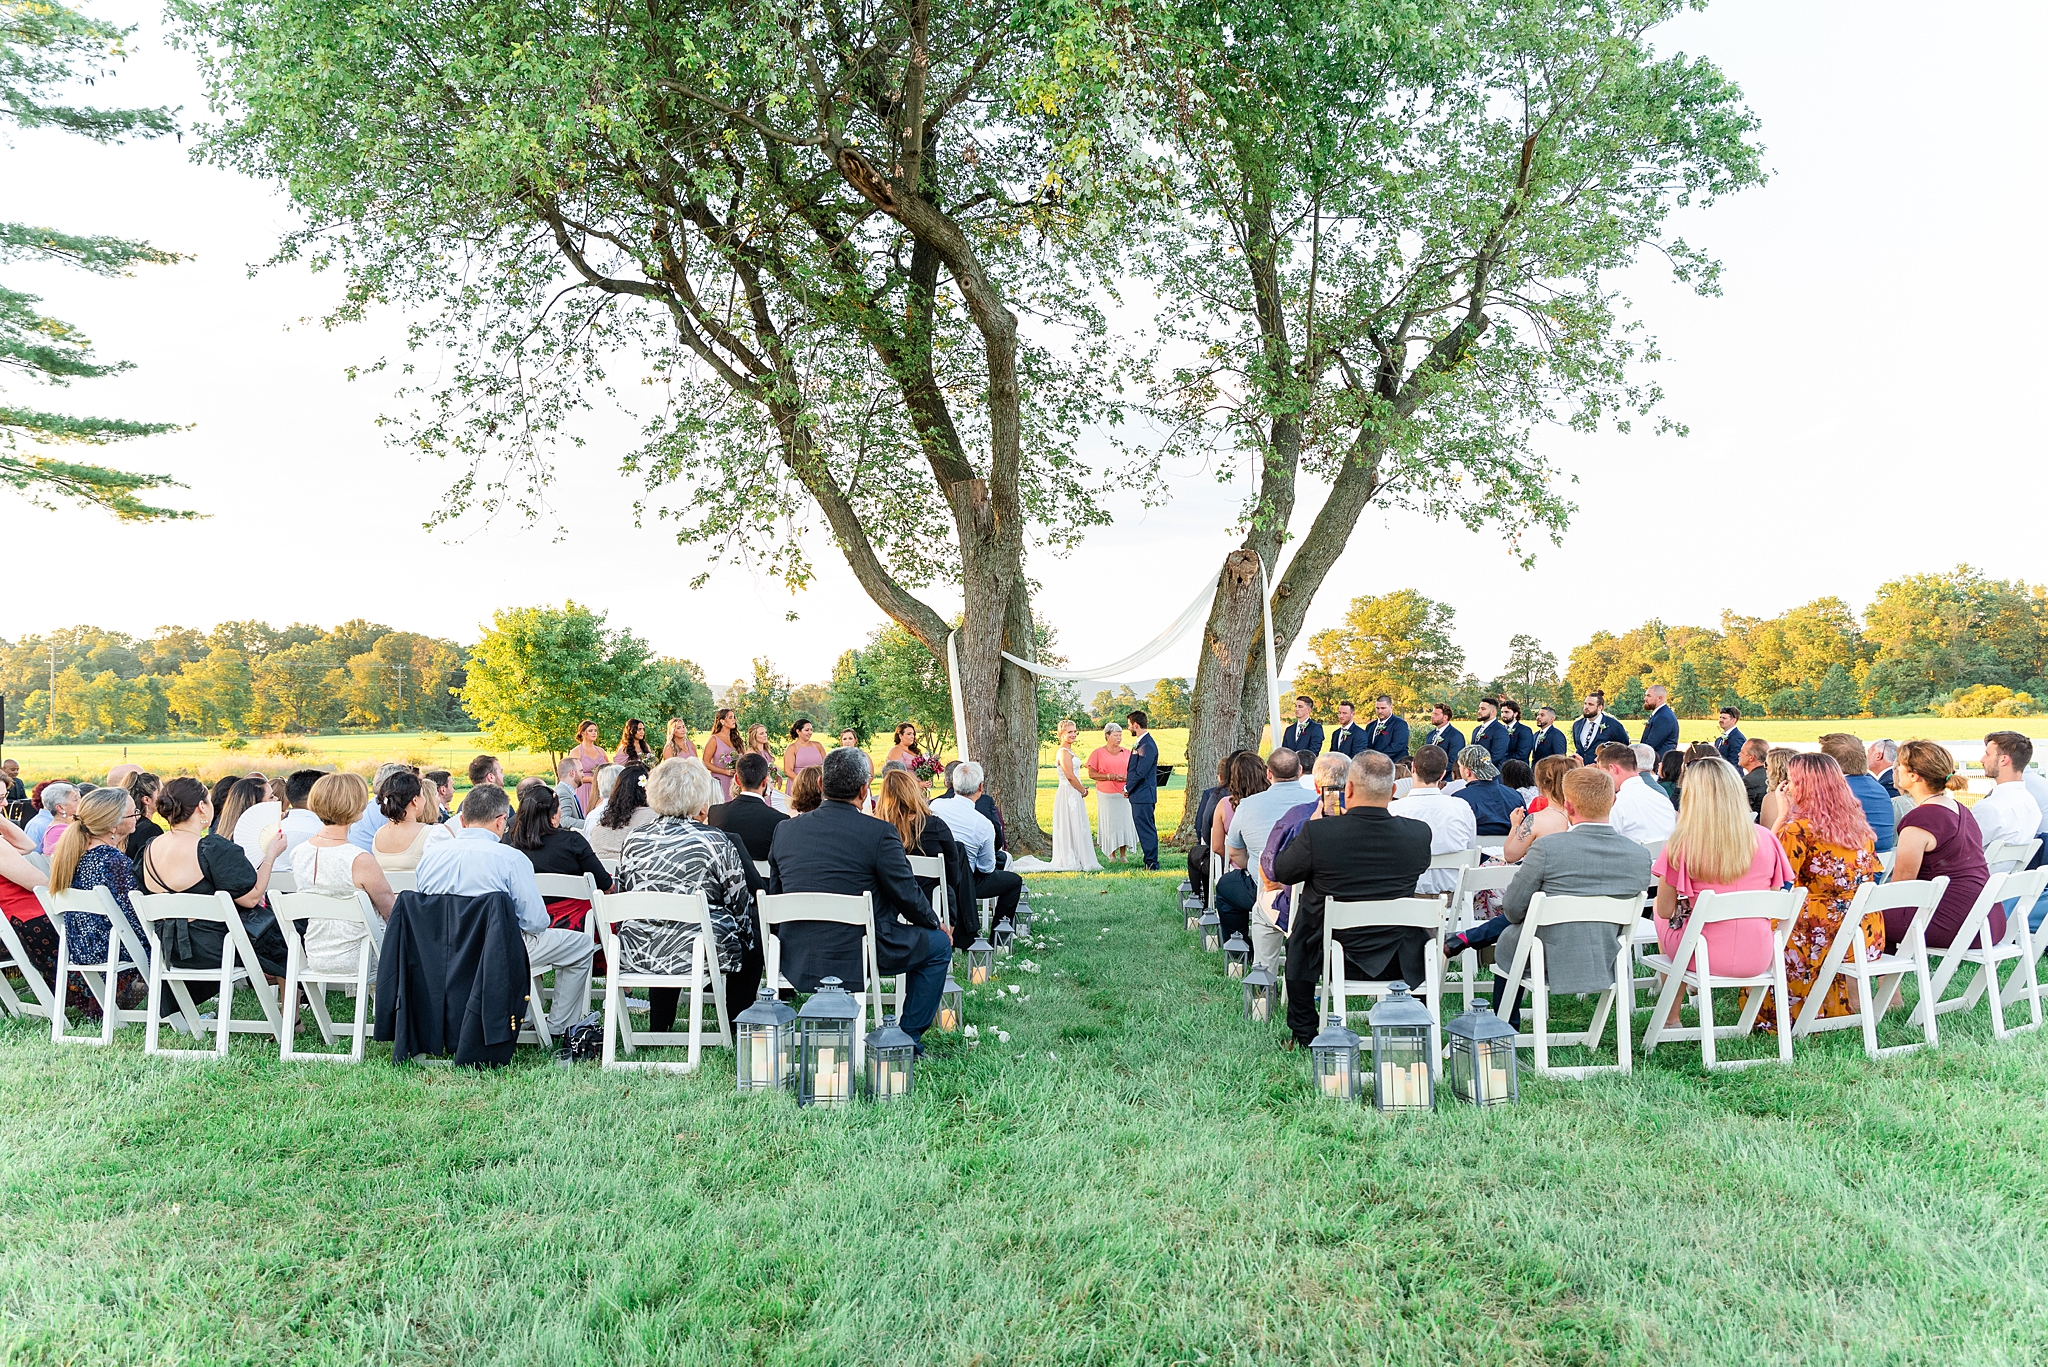 East Lyn Farm outdoor wedding ceremony